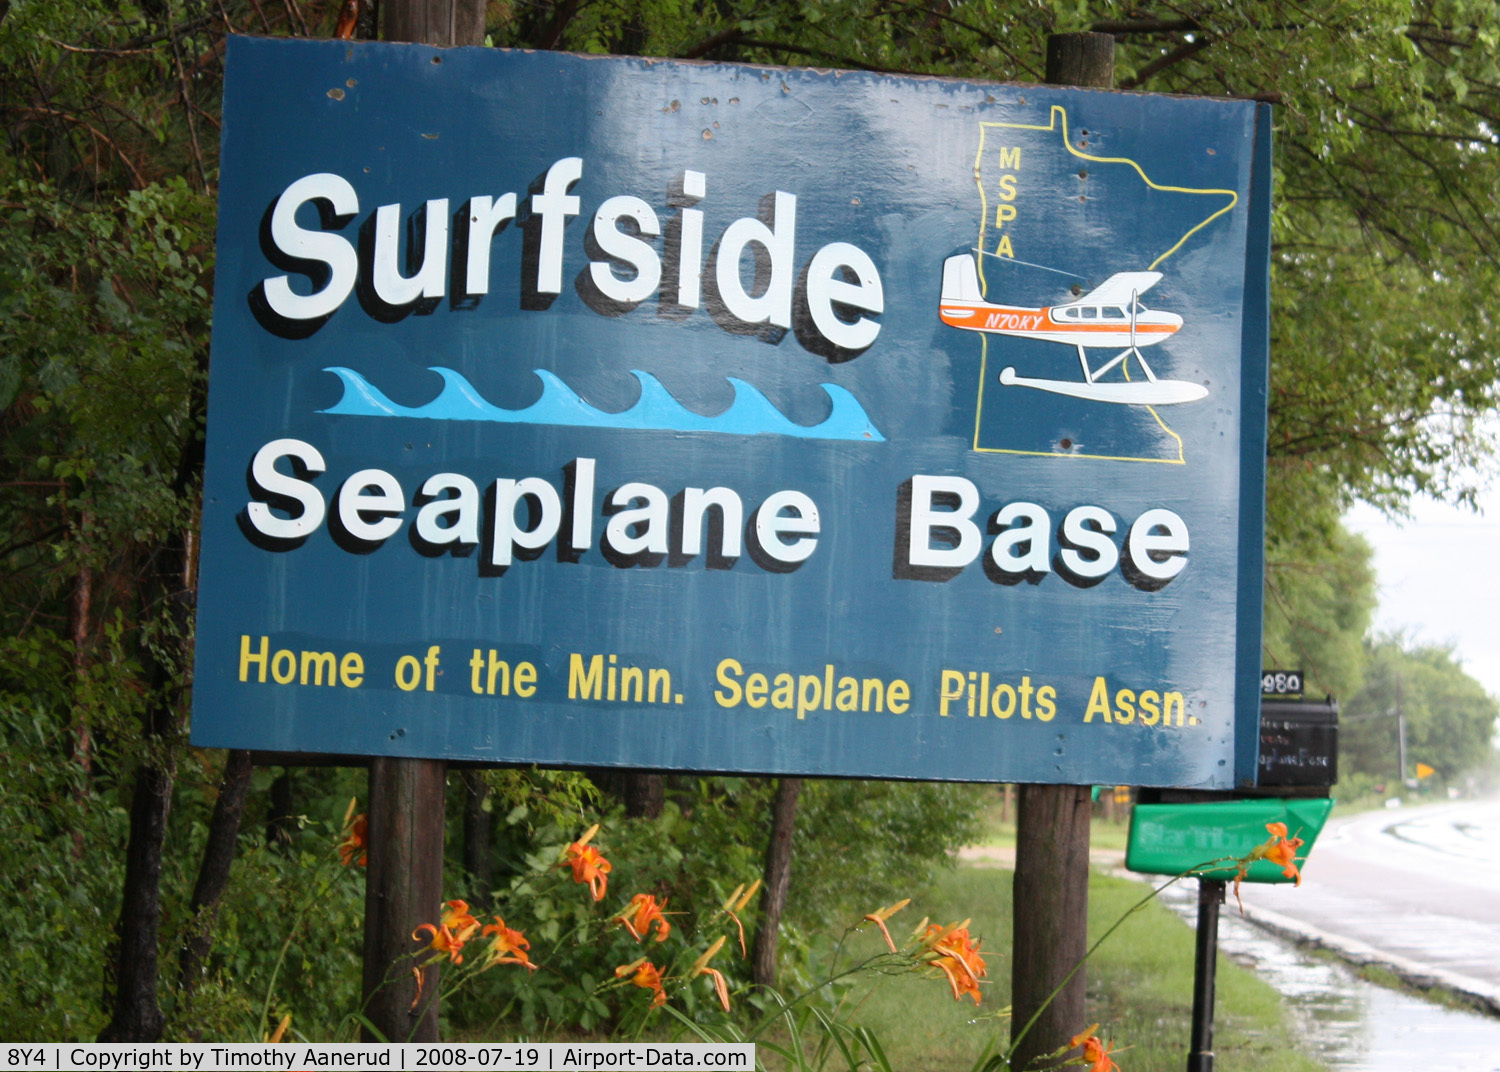 Surfside Seaplane Base (8Y4) - Entrance sign